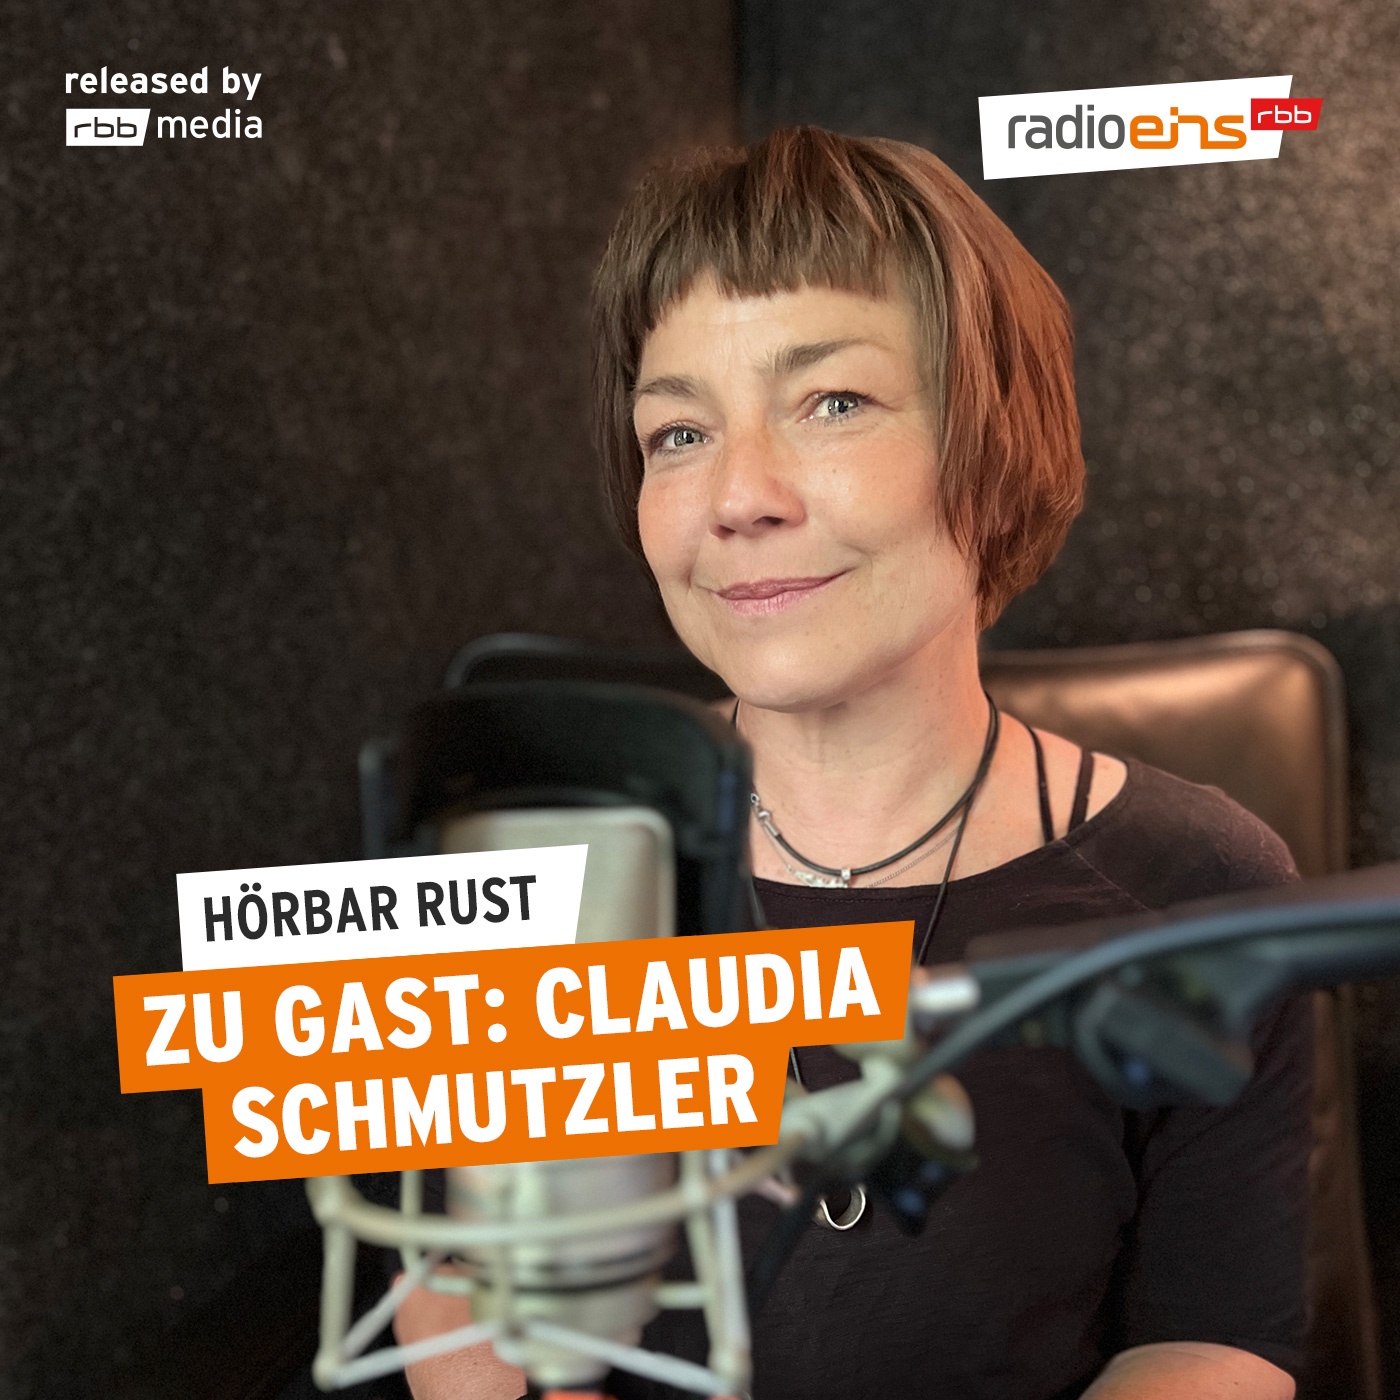 Claudia Schmutzler